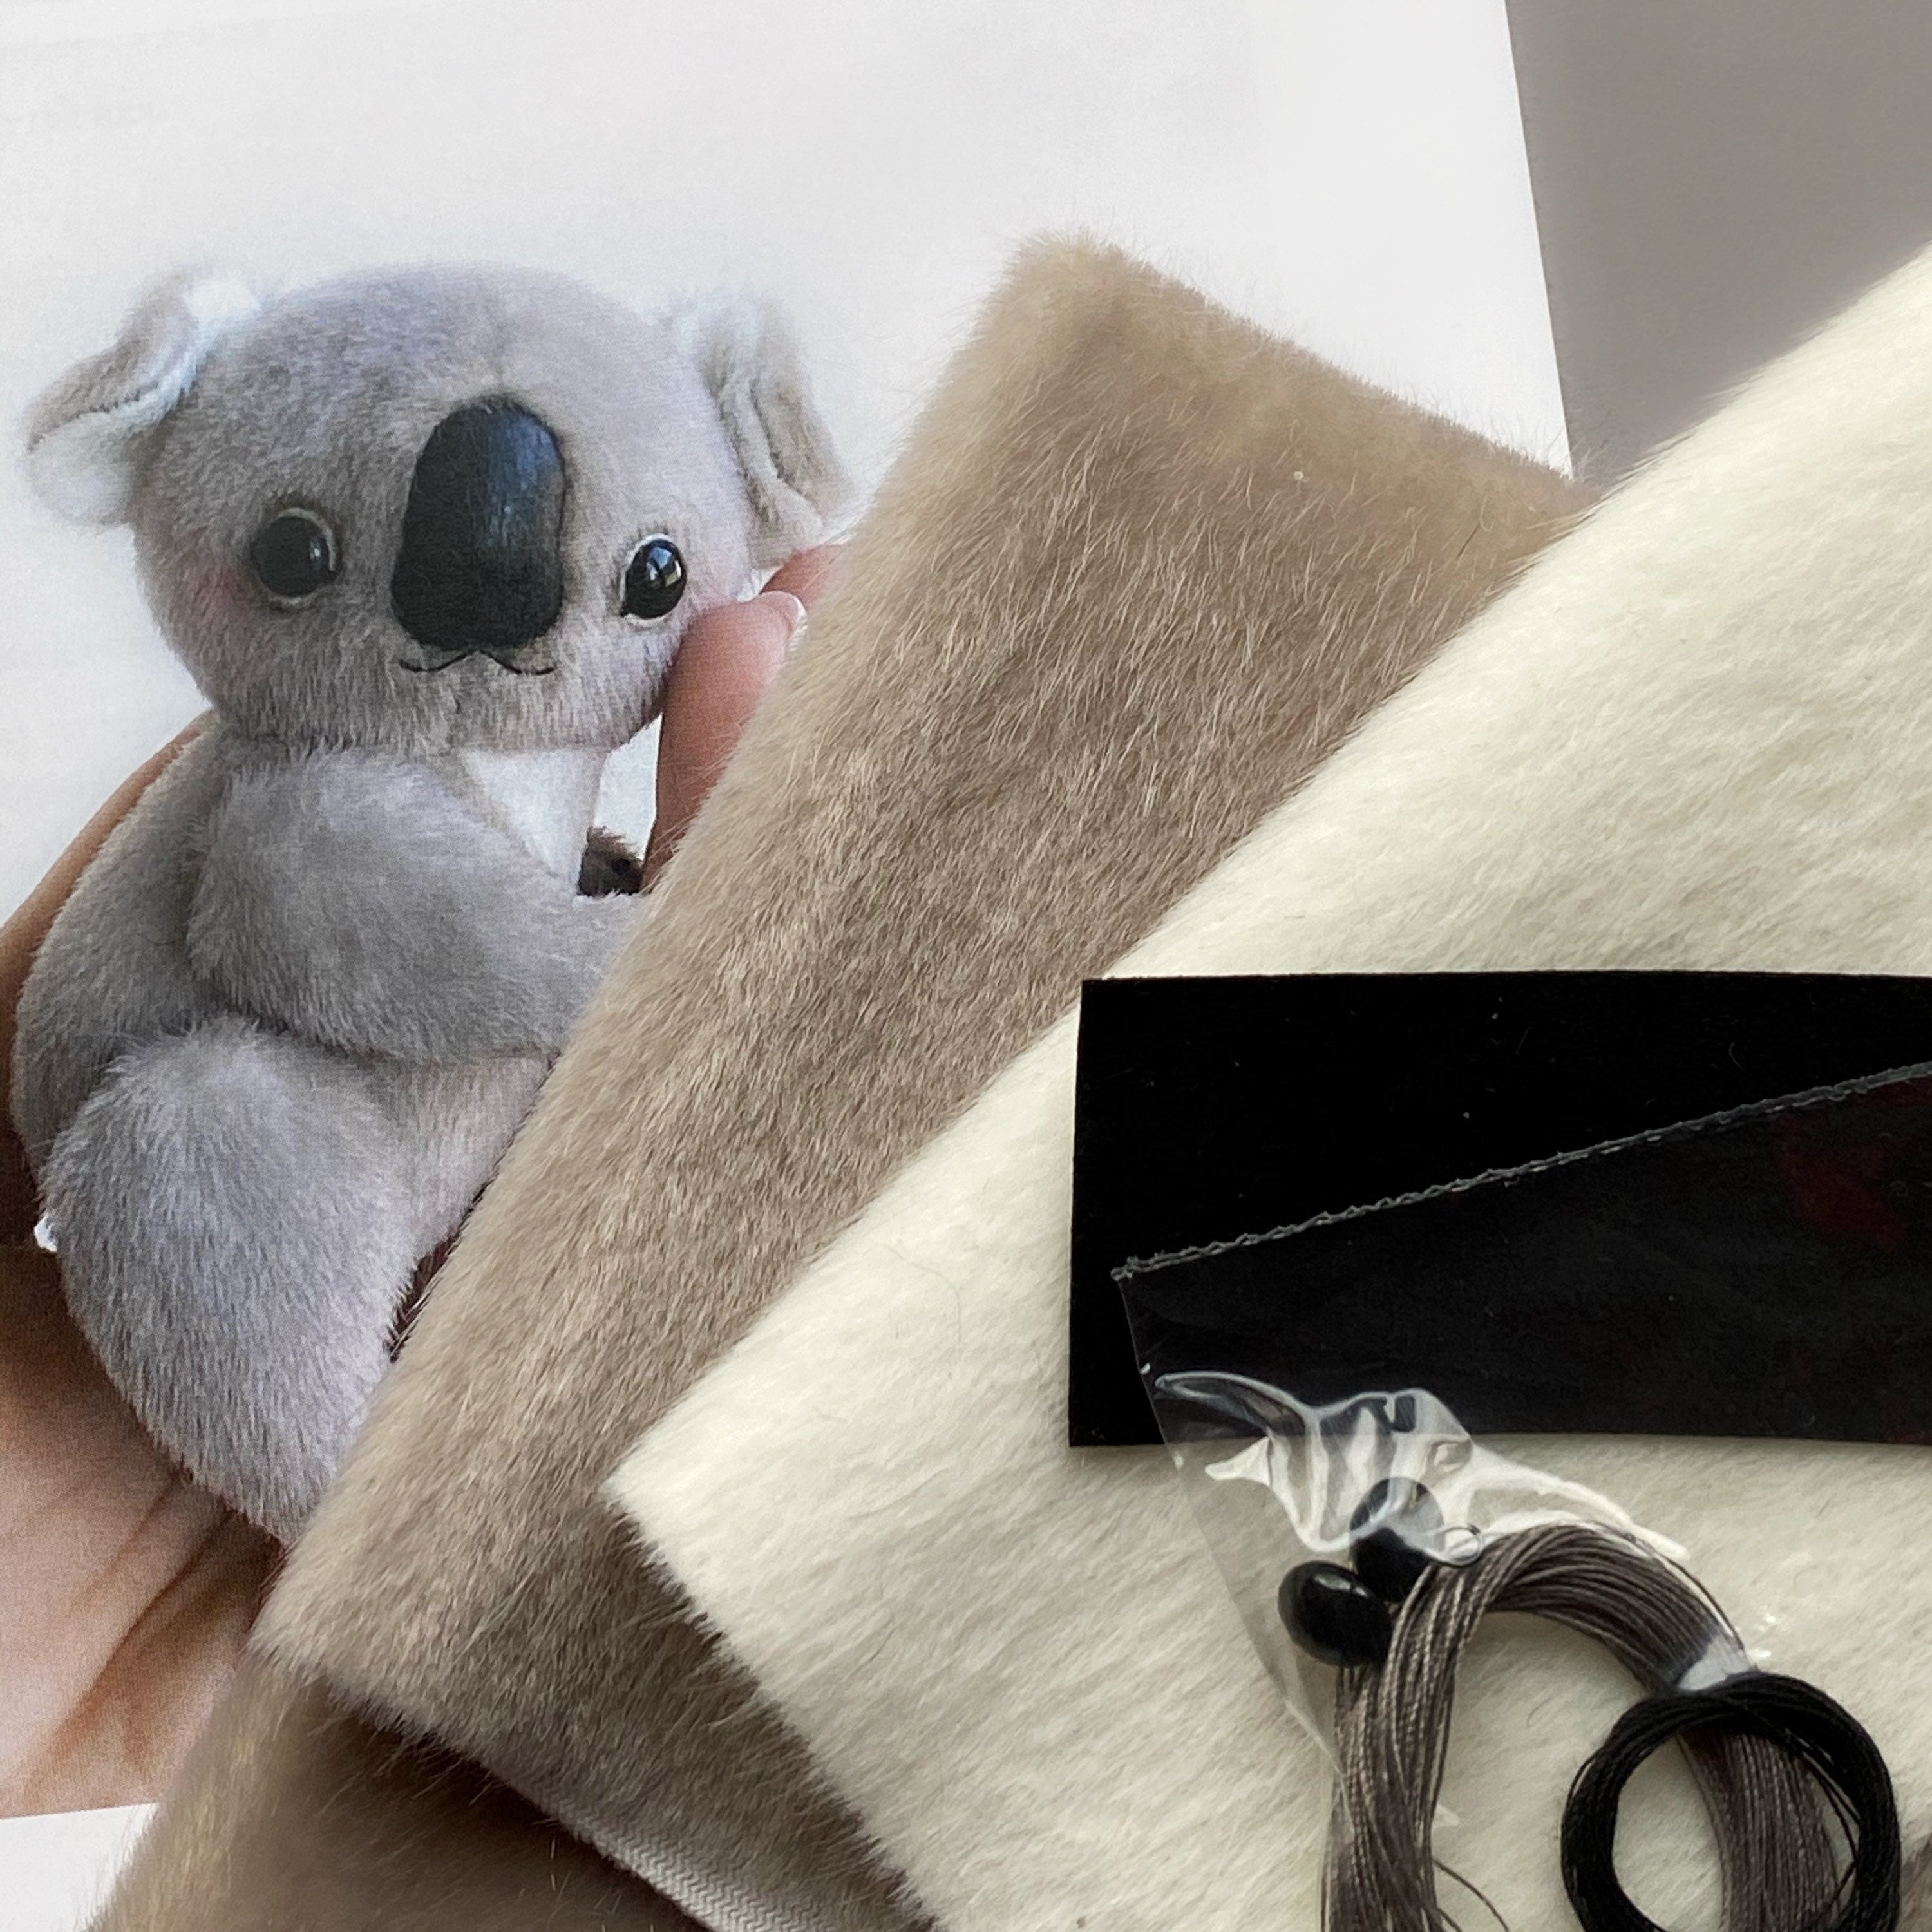 Koala - Sewing KIT,  artist pattern koala, craft kit koala, cute koala tutorials, soft toy diy, stuffed animal pattern, craft kit adults